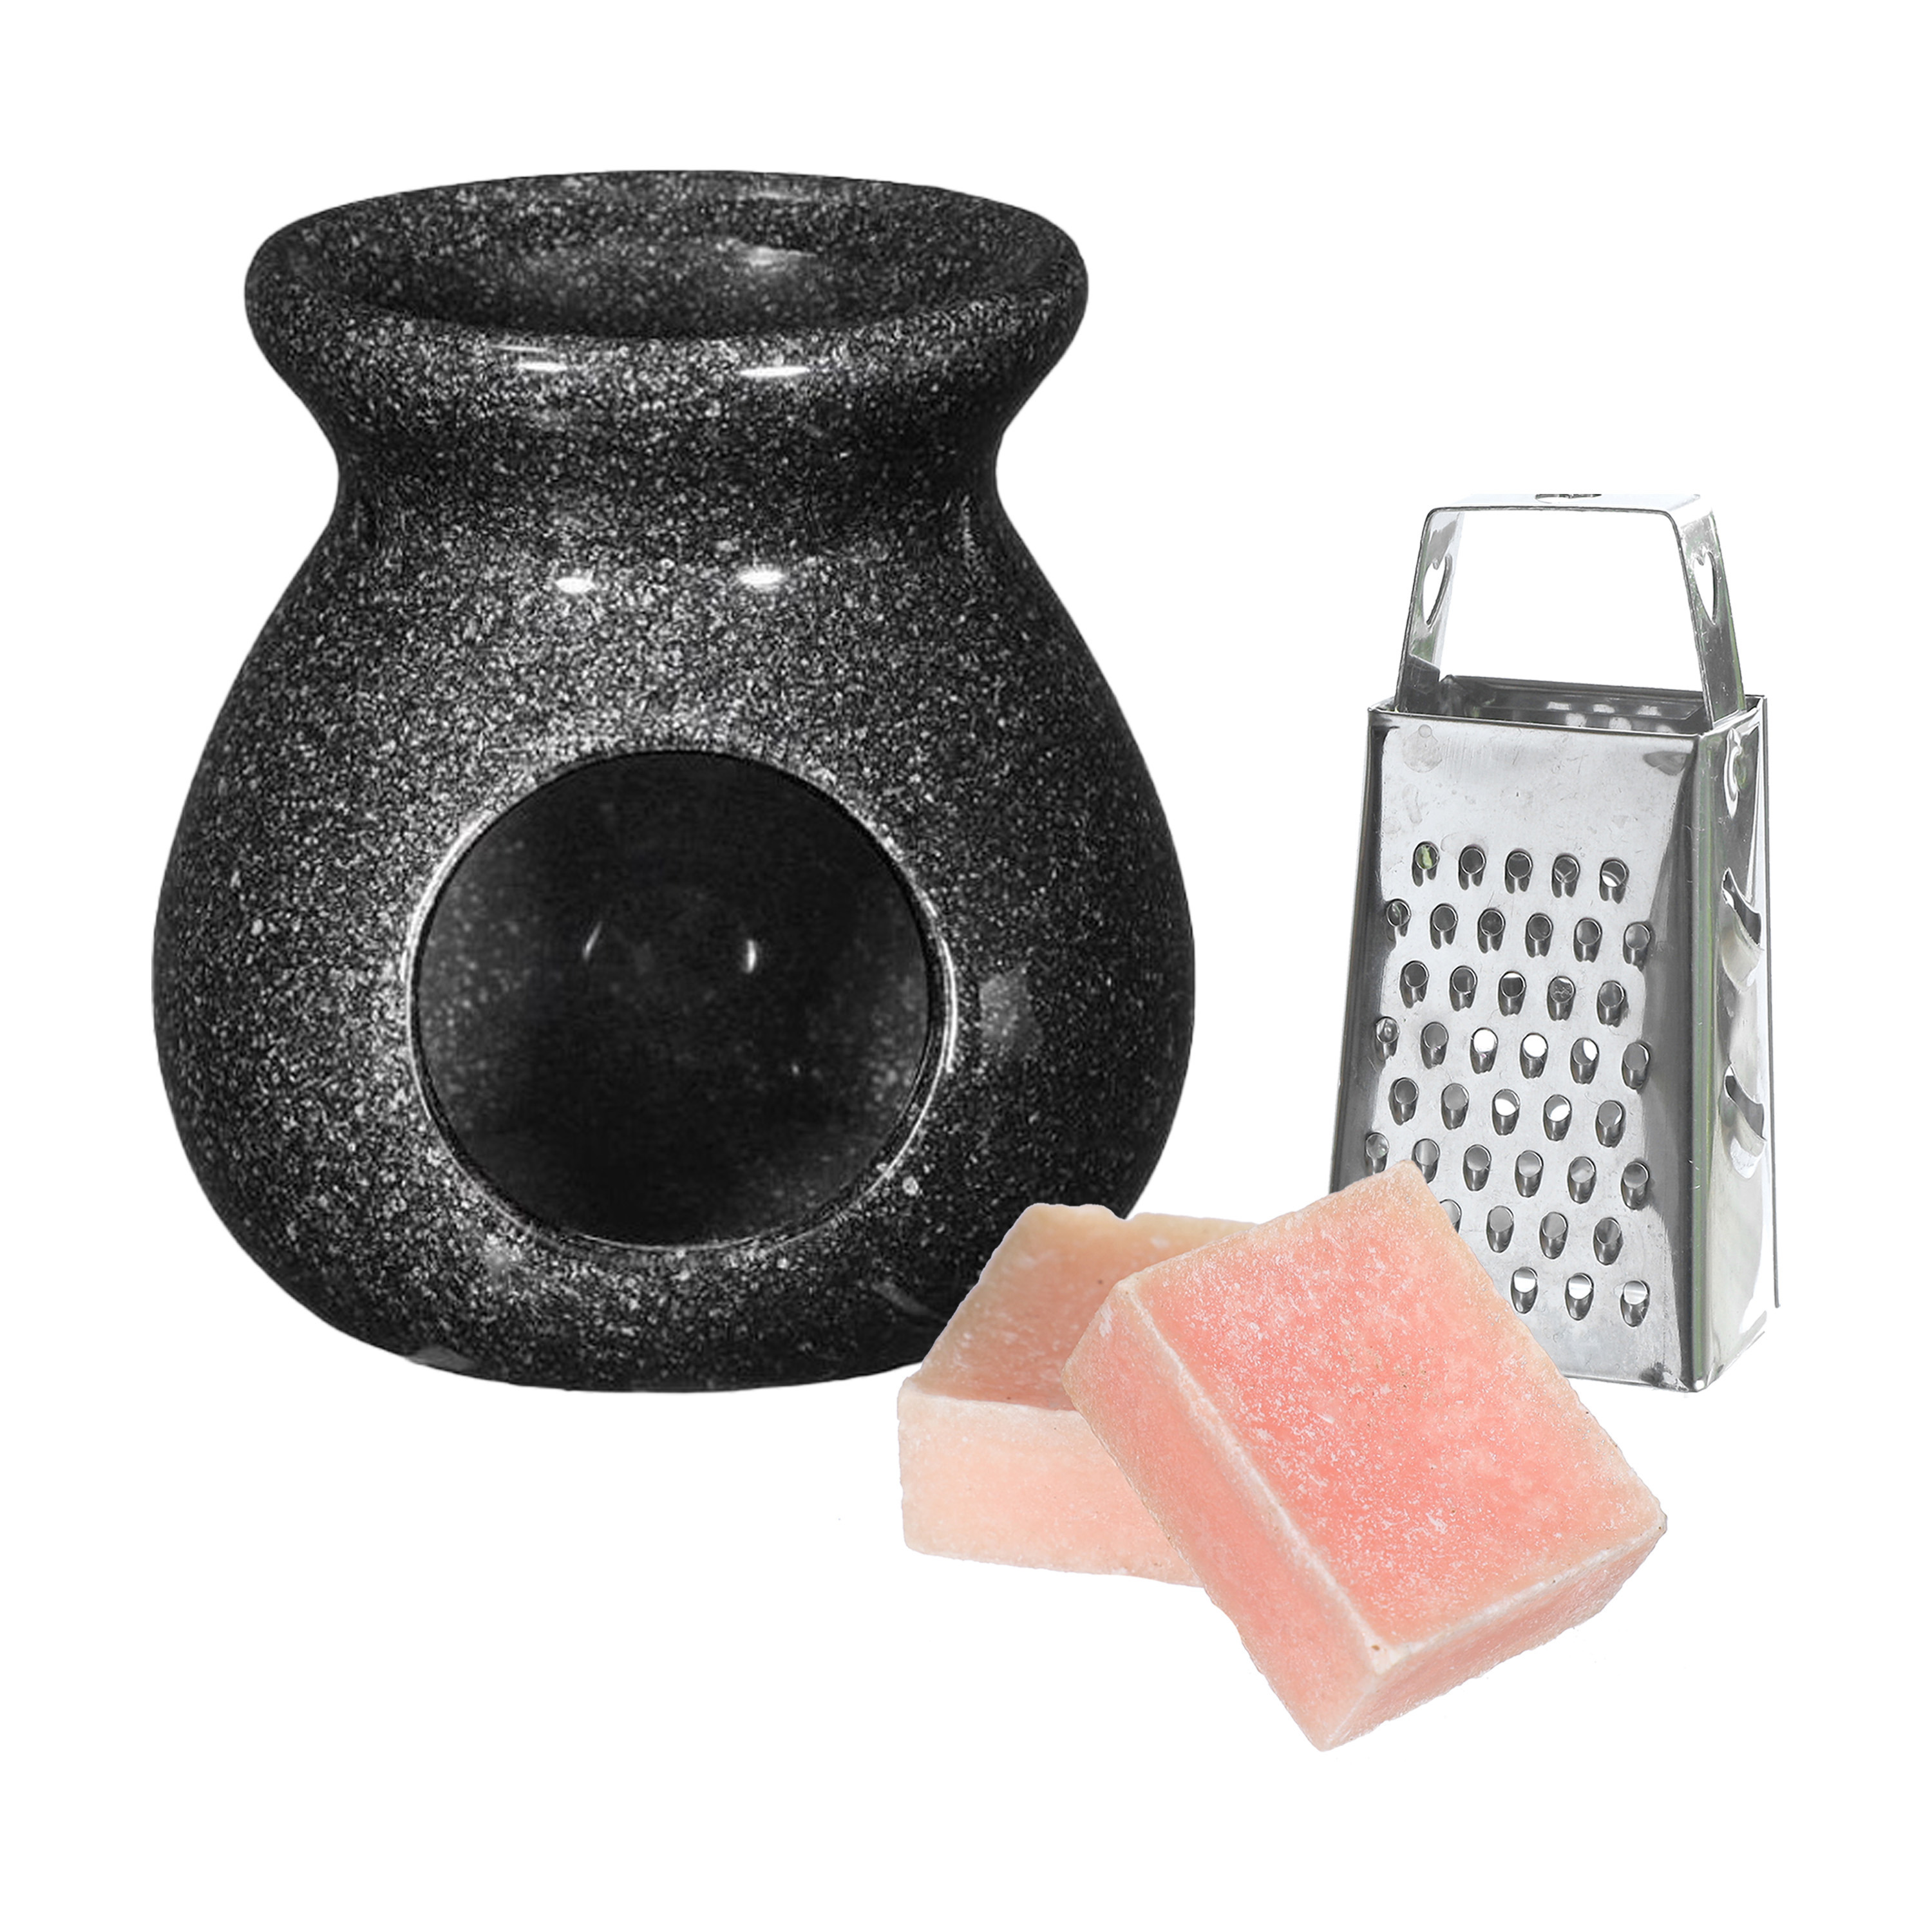 Amberblokjes-geurblokjes cadeauset roos geur inclusief geurbrander en mini rasp